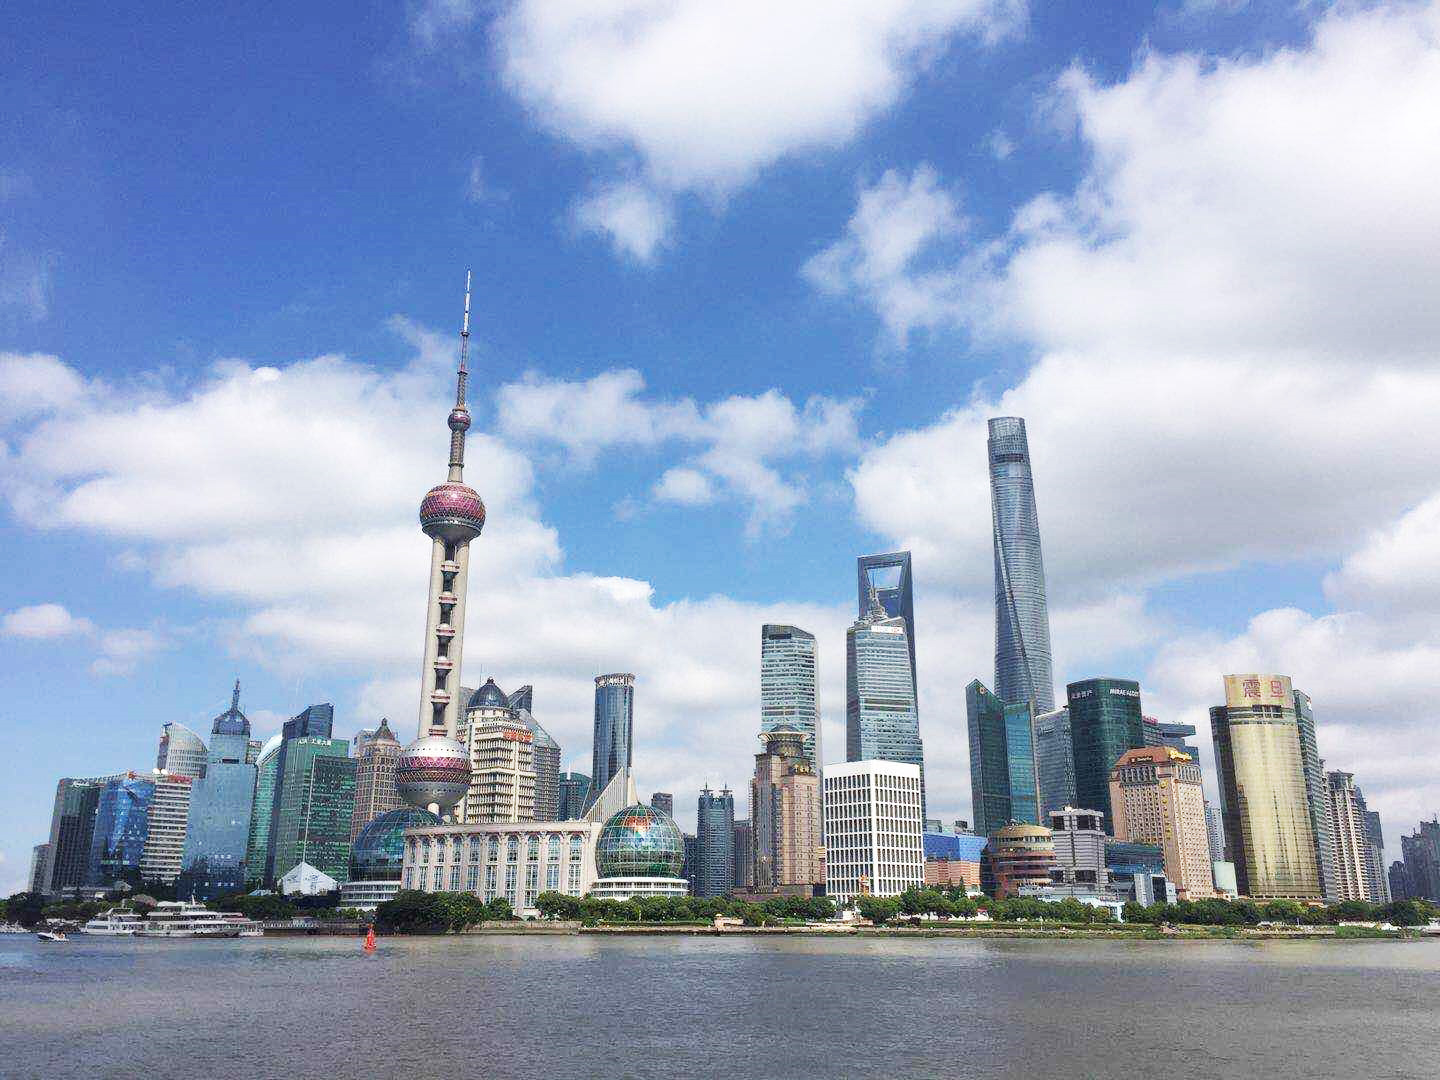 Skyline view of Shanghai, China.